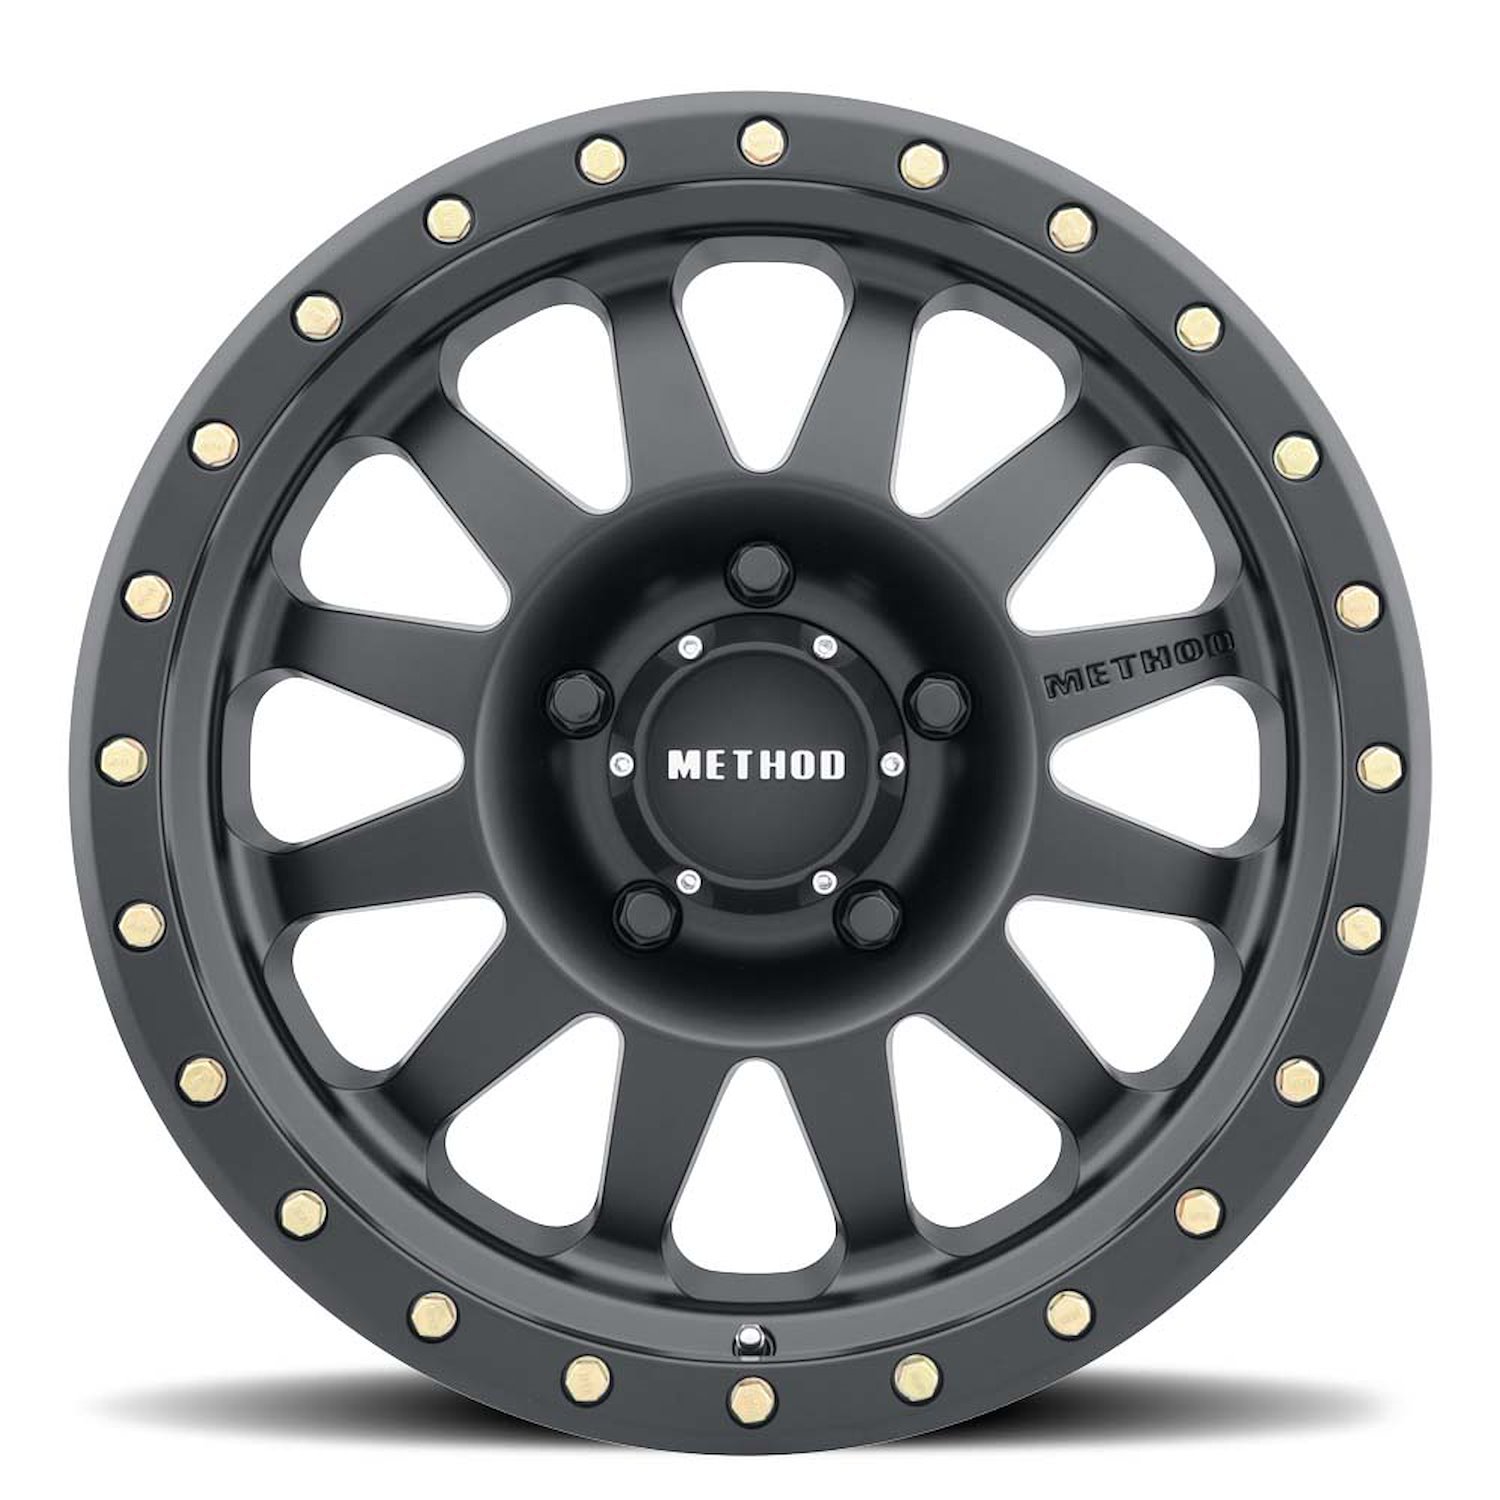 MR30458055524N STREET MR304 Double Standard Wheel [Size: 15" x 8"] Matte Black